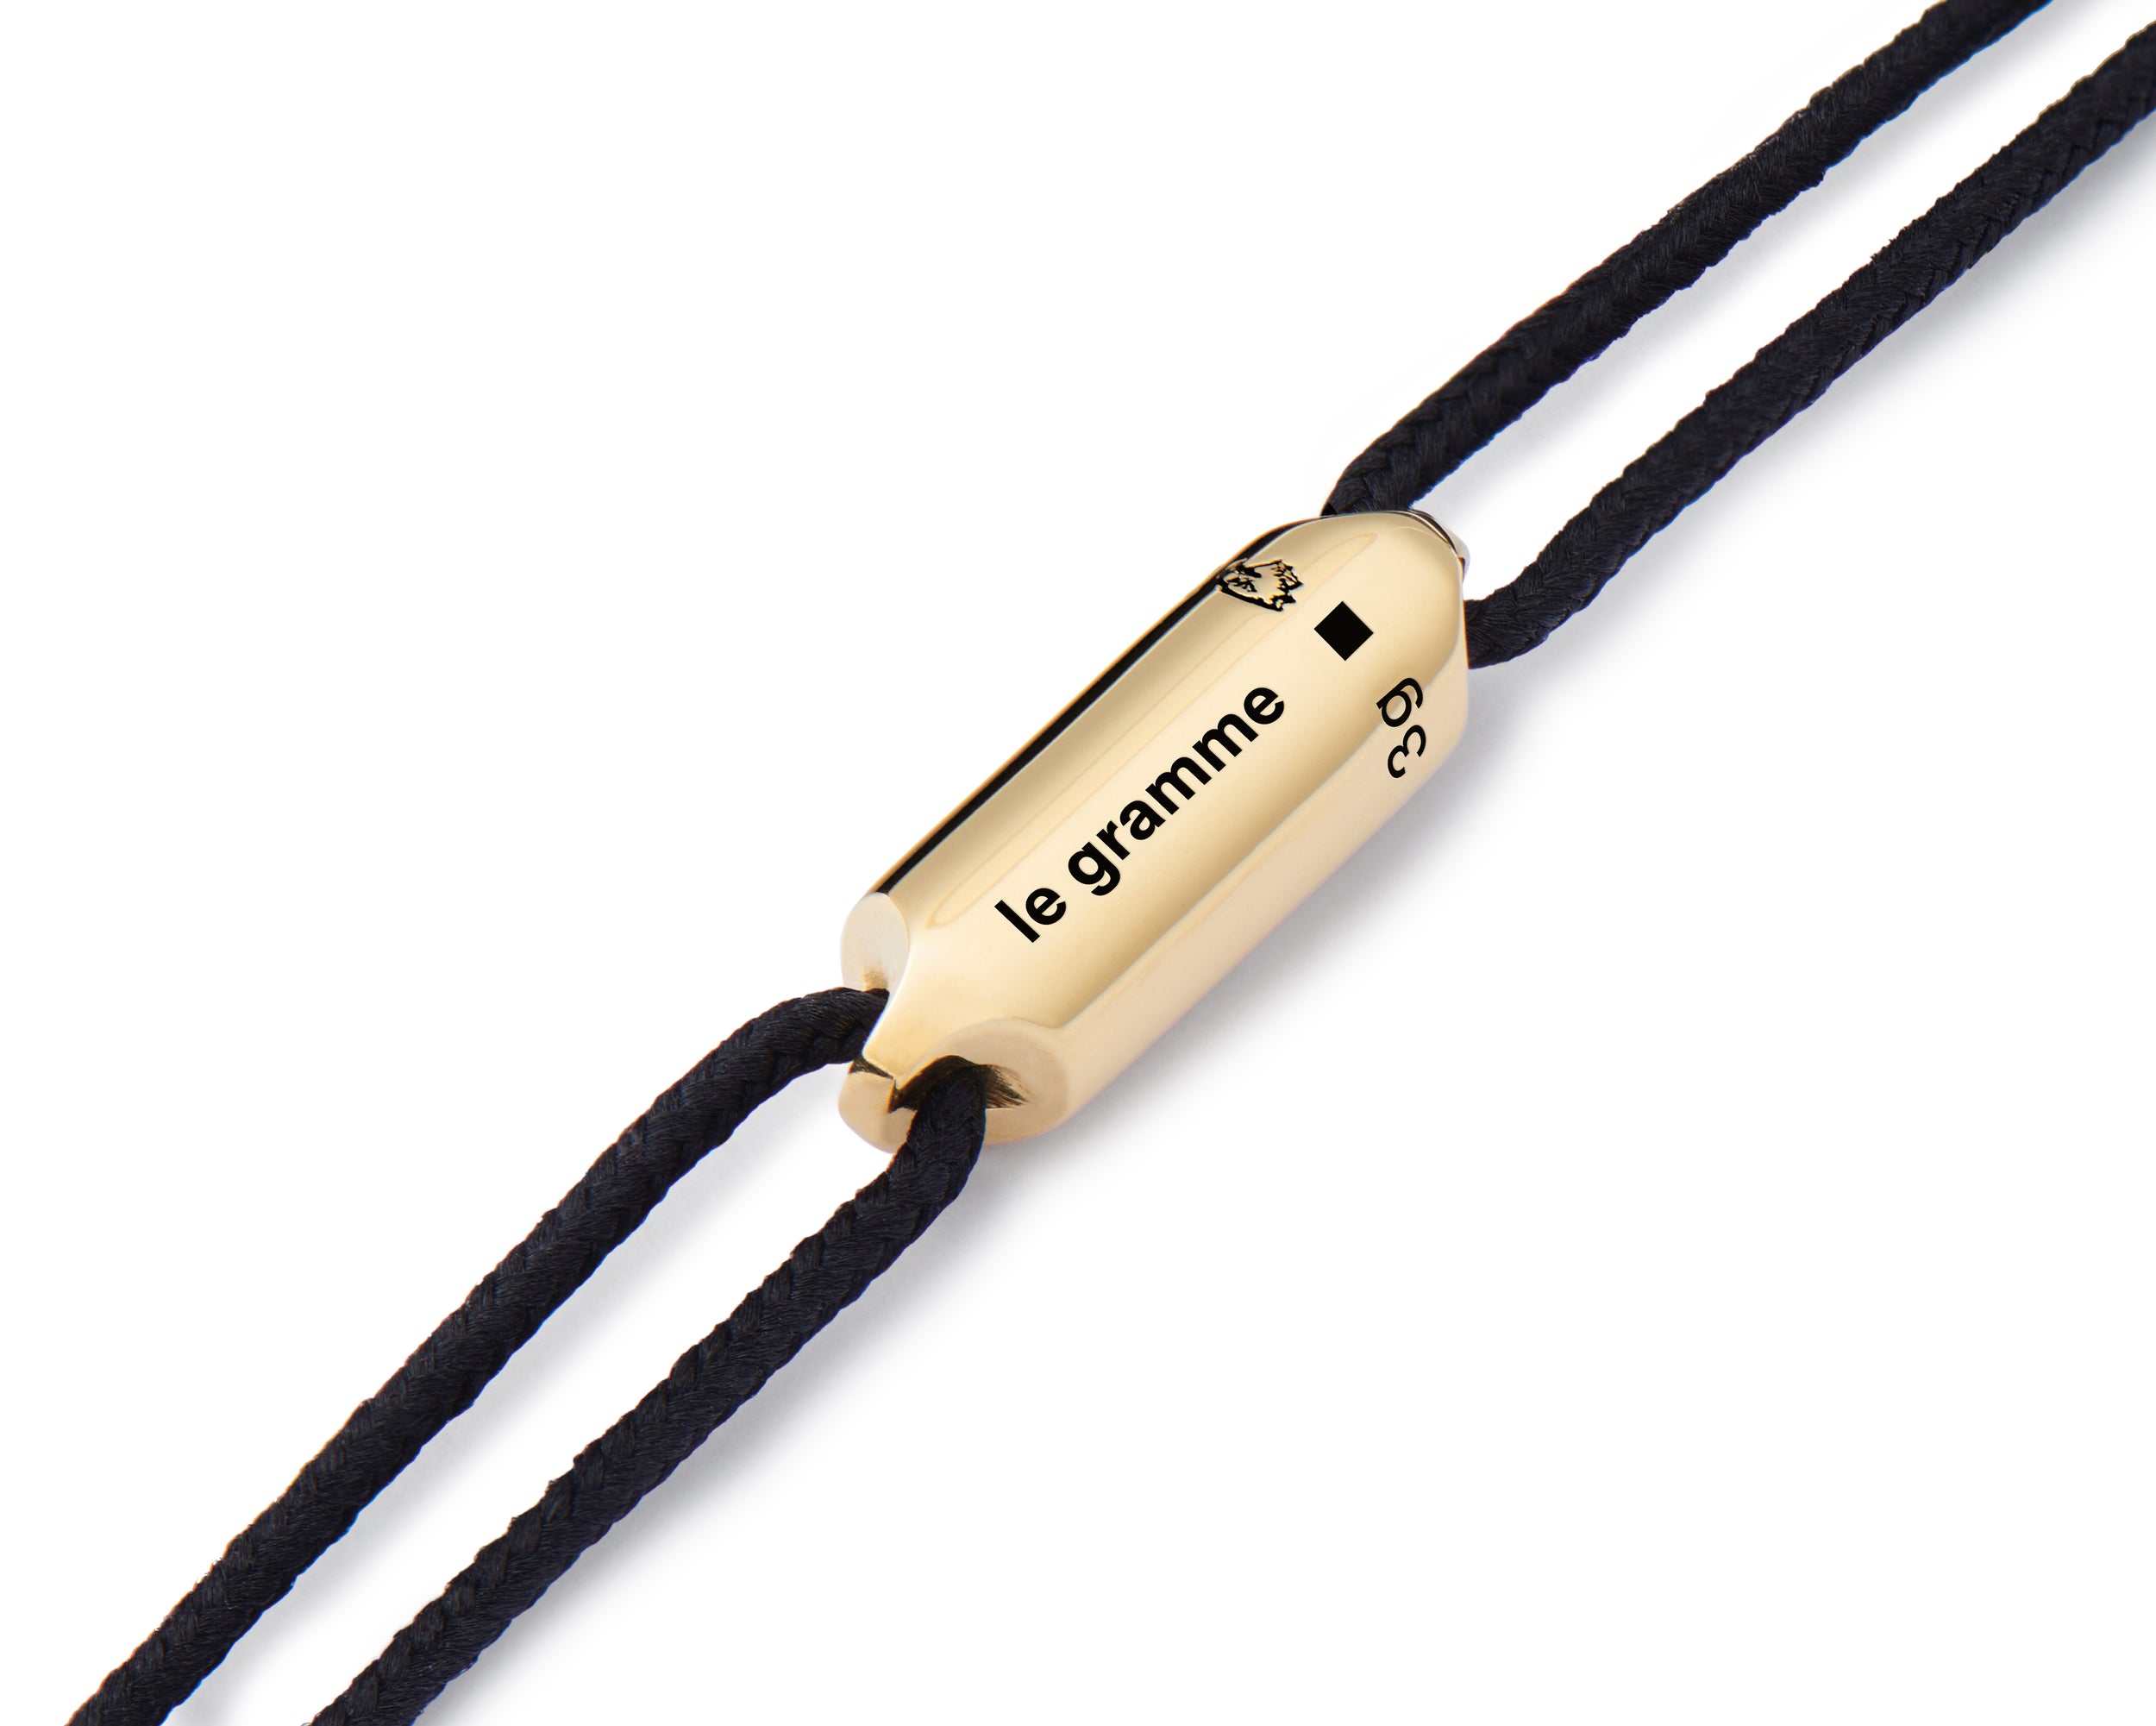 black cord bracelet le segment le 3g